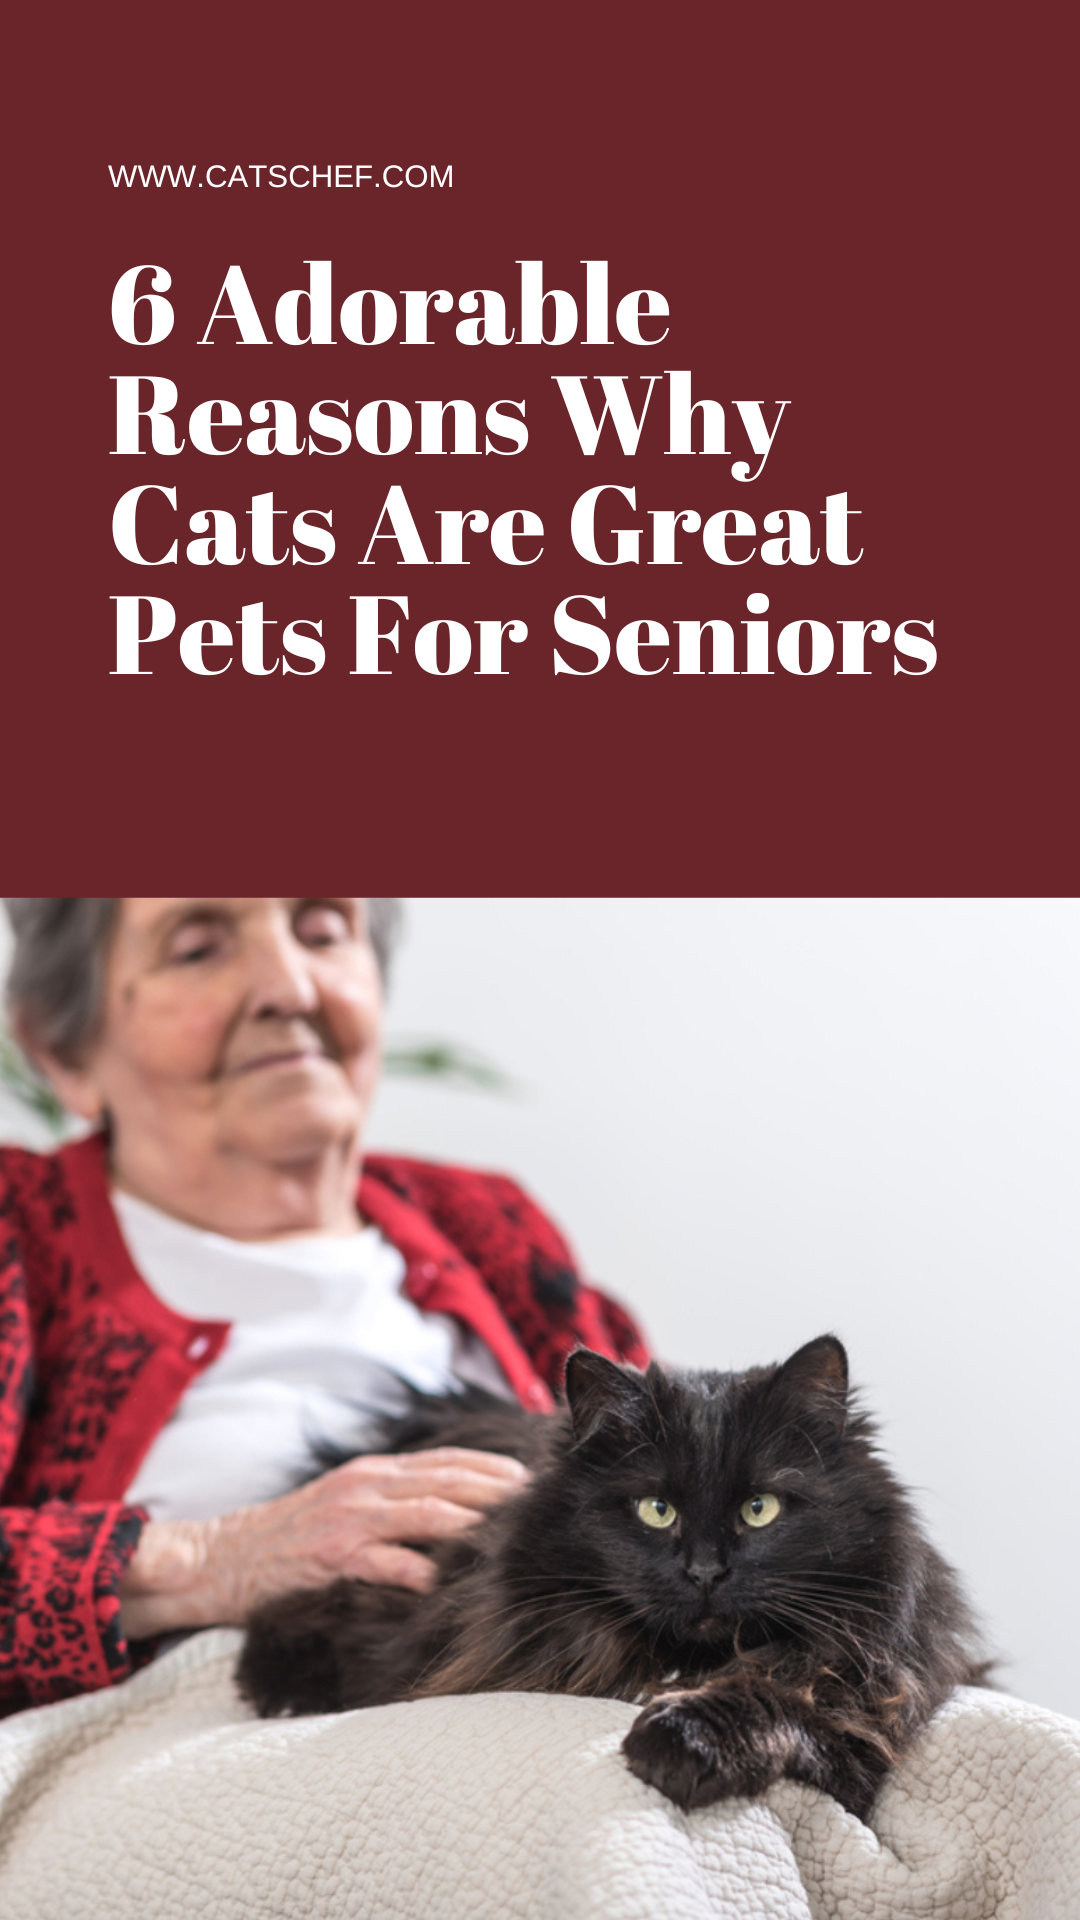 Kedilerin Yaşlılar İçin Harika Evcil Hayvanlar Olmasının 6 Sevimli Nedeni